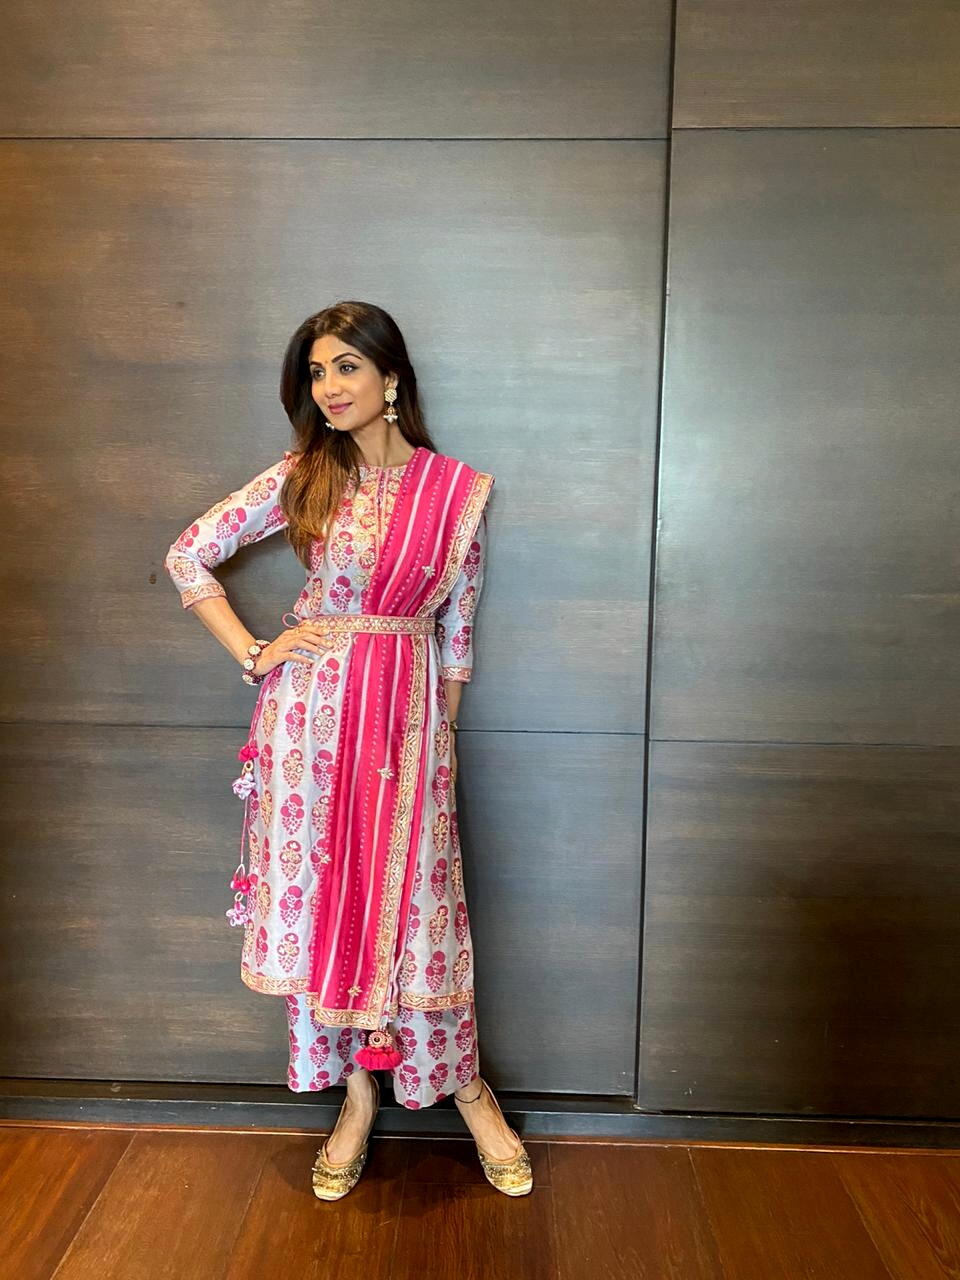 Shilpa Shetty Kundra in Fashion Designer Punit Balana's Outfit-Fuchsia Pink Kurta